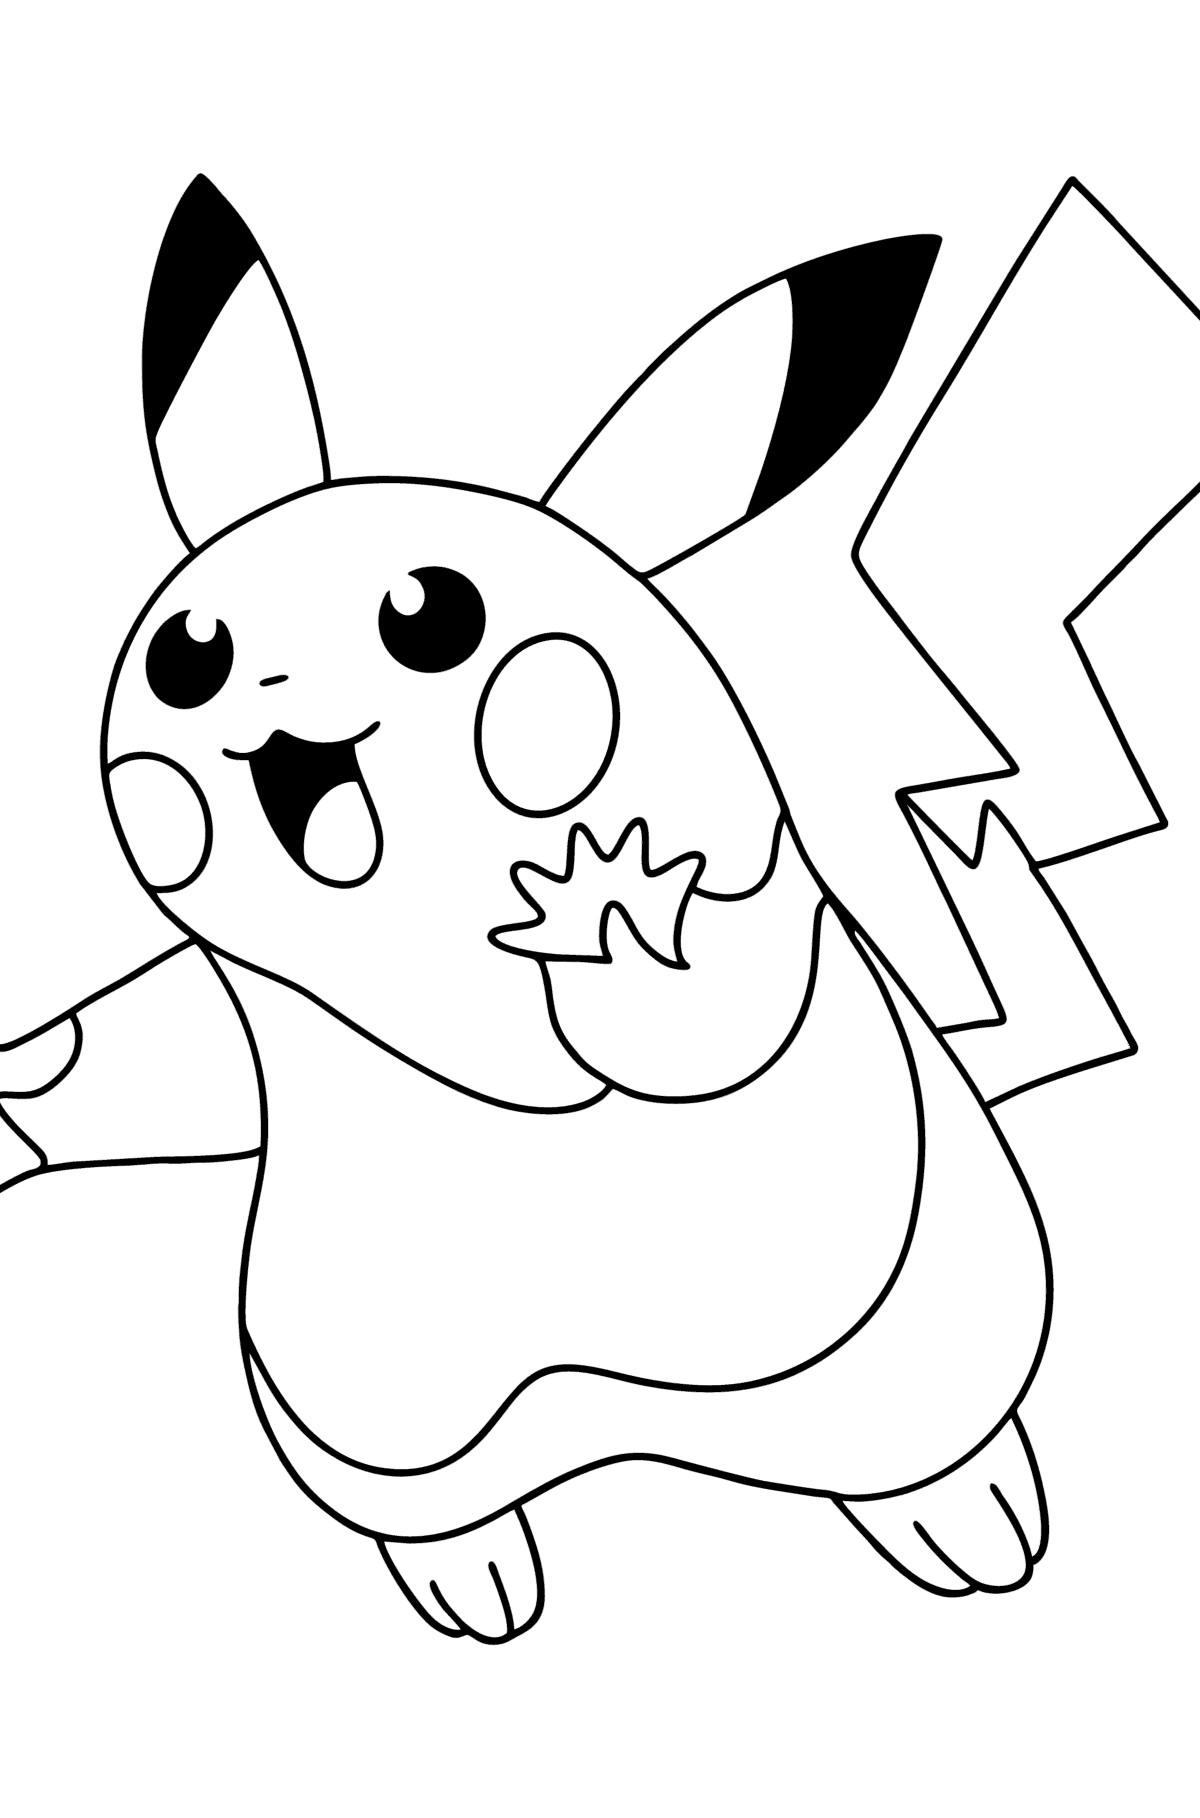 Kleurplaat Pokémon Go Picachu-go - kleurplaten voor kinderen